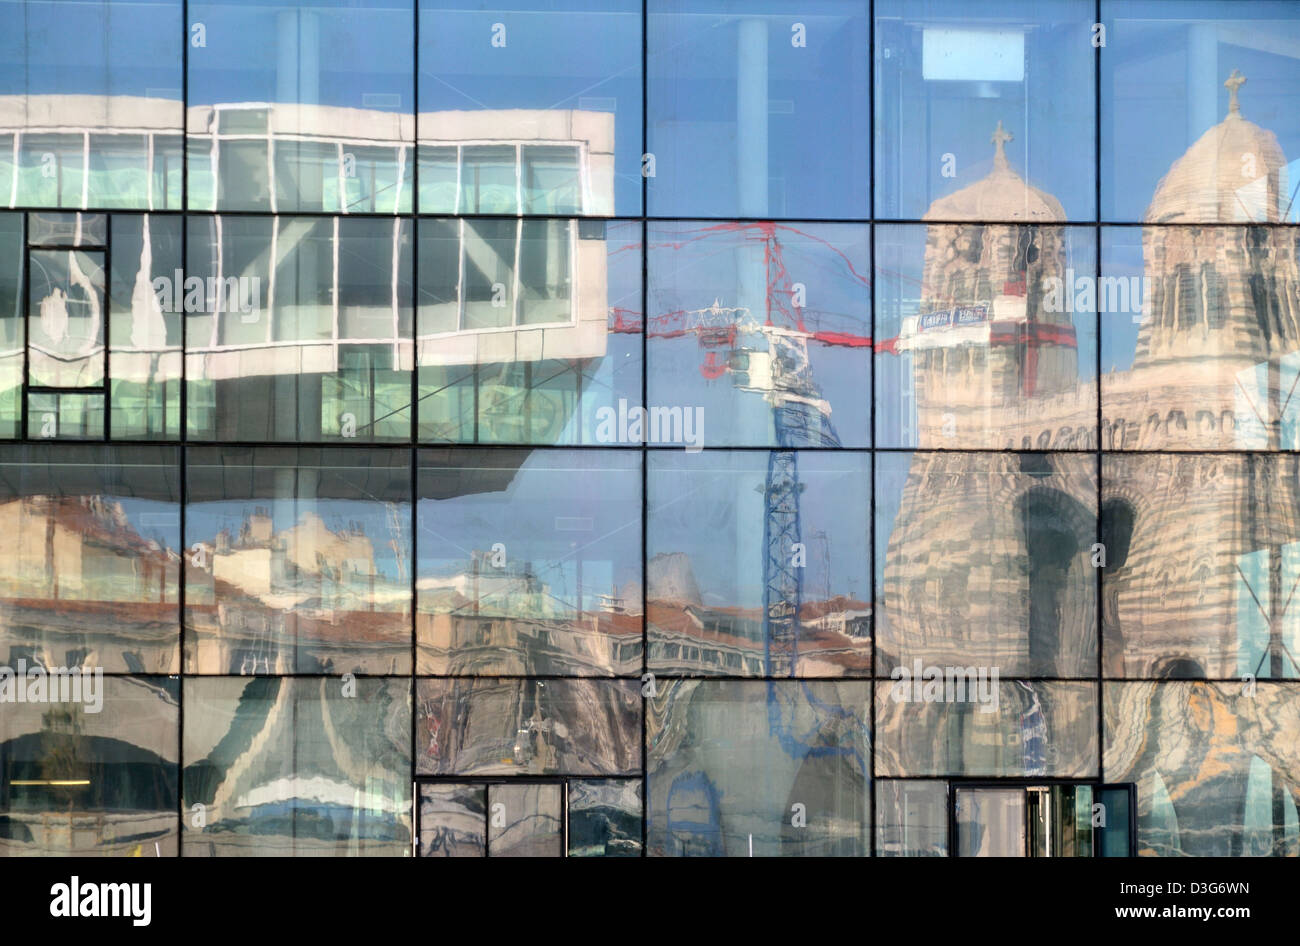 Stadt-Reflexionen der Villa Mediterranée & Kathedrale von Marseille in das Spiegelglas des MUCEM Museum Marseille Frankreich Stockfoto